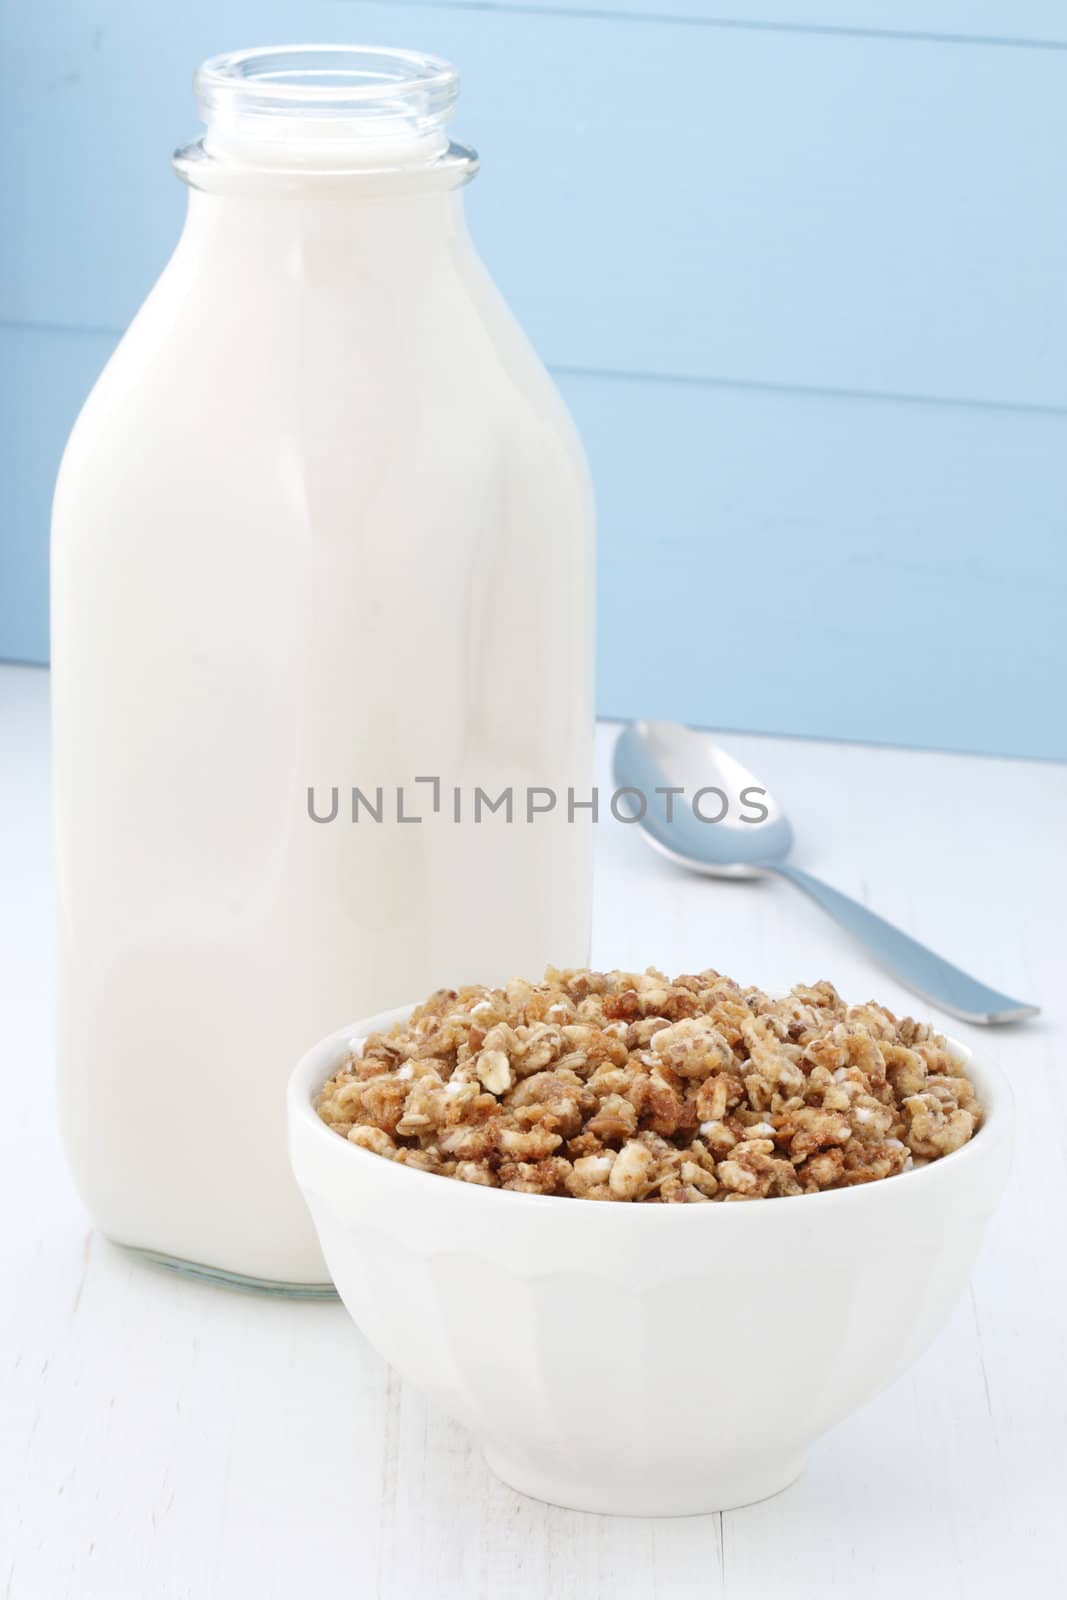 Delicious healthy crunchy cereal by tacar